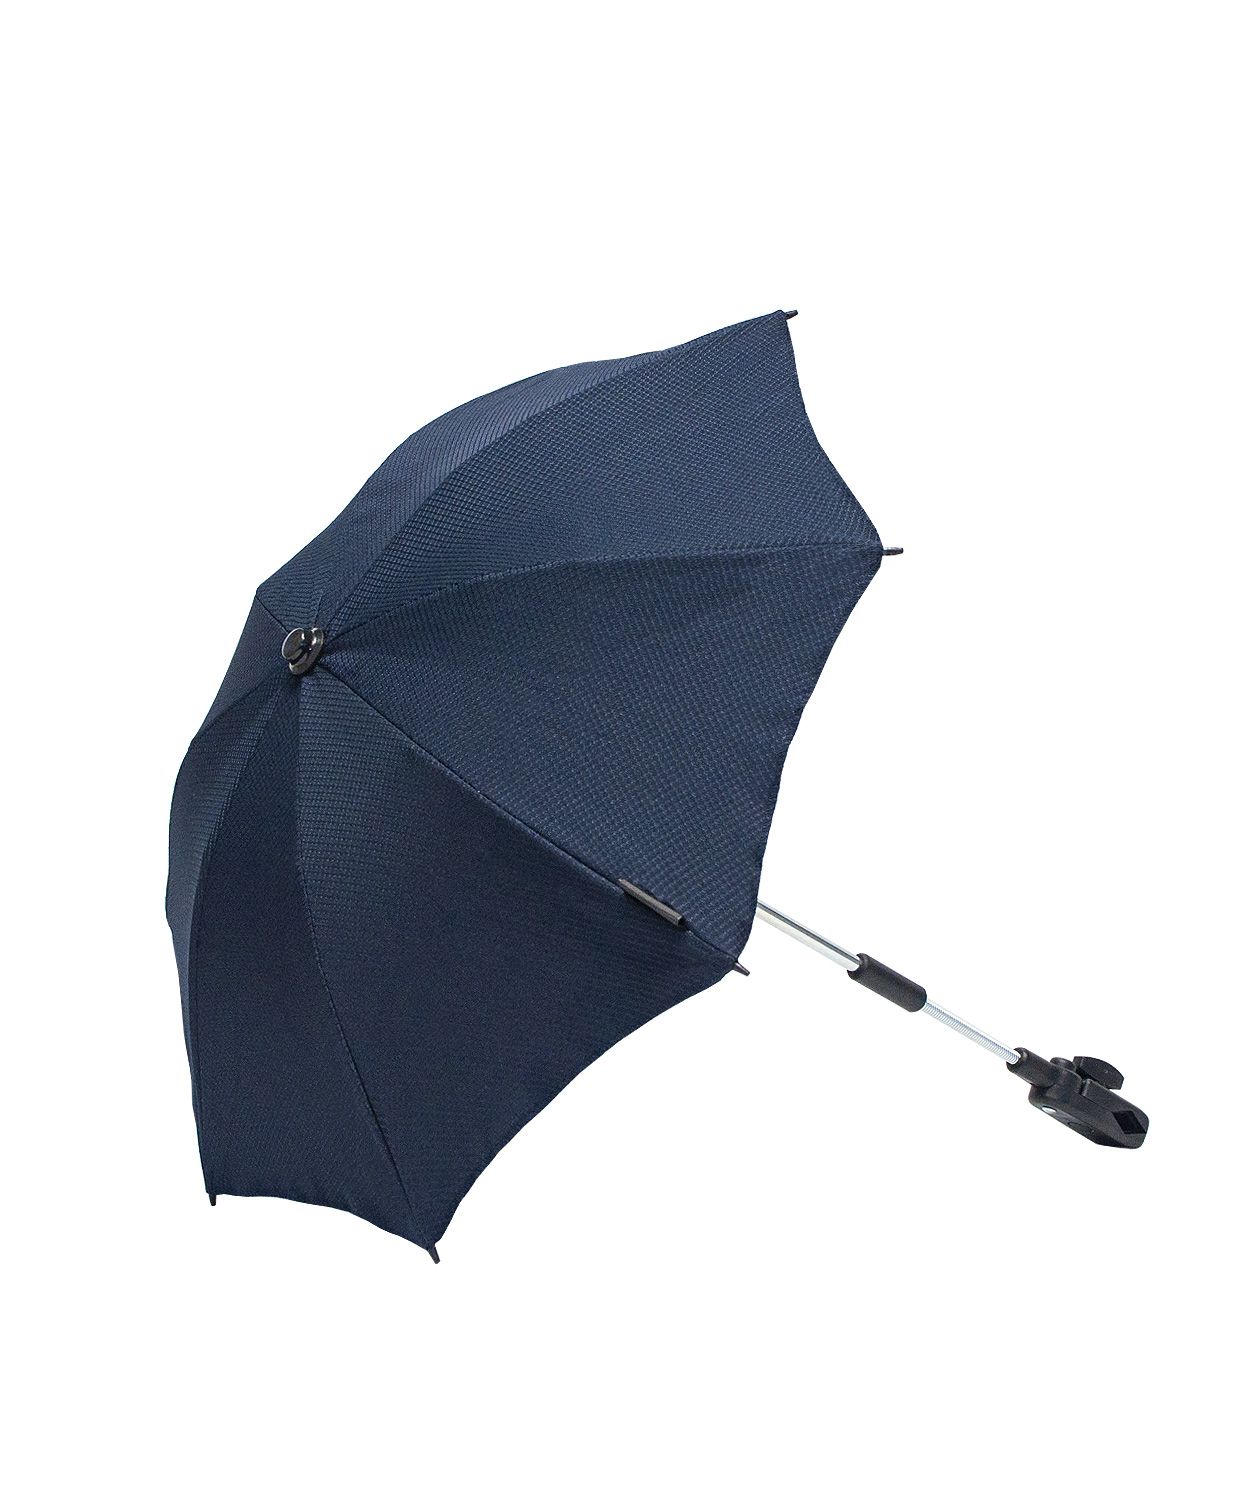 navy pram parasol